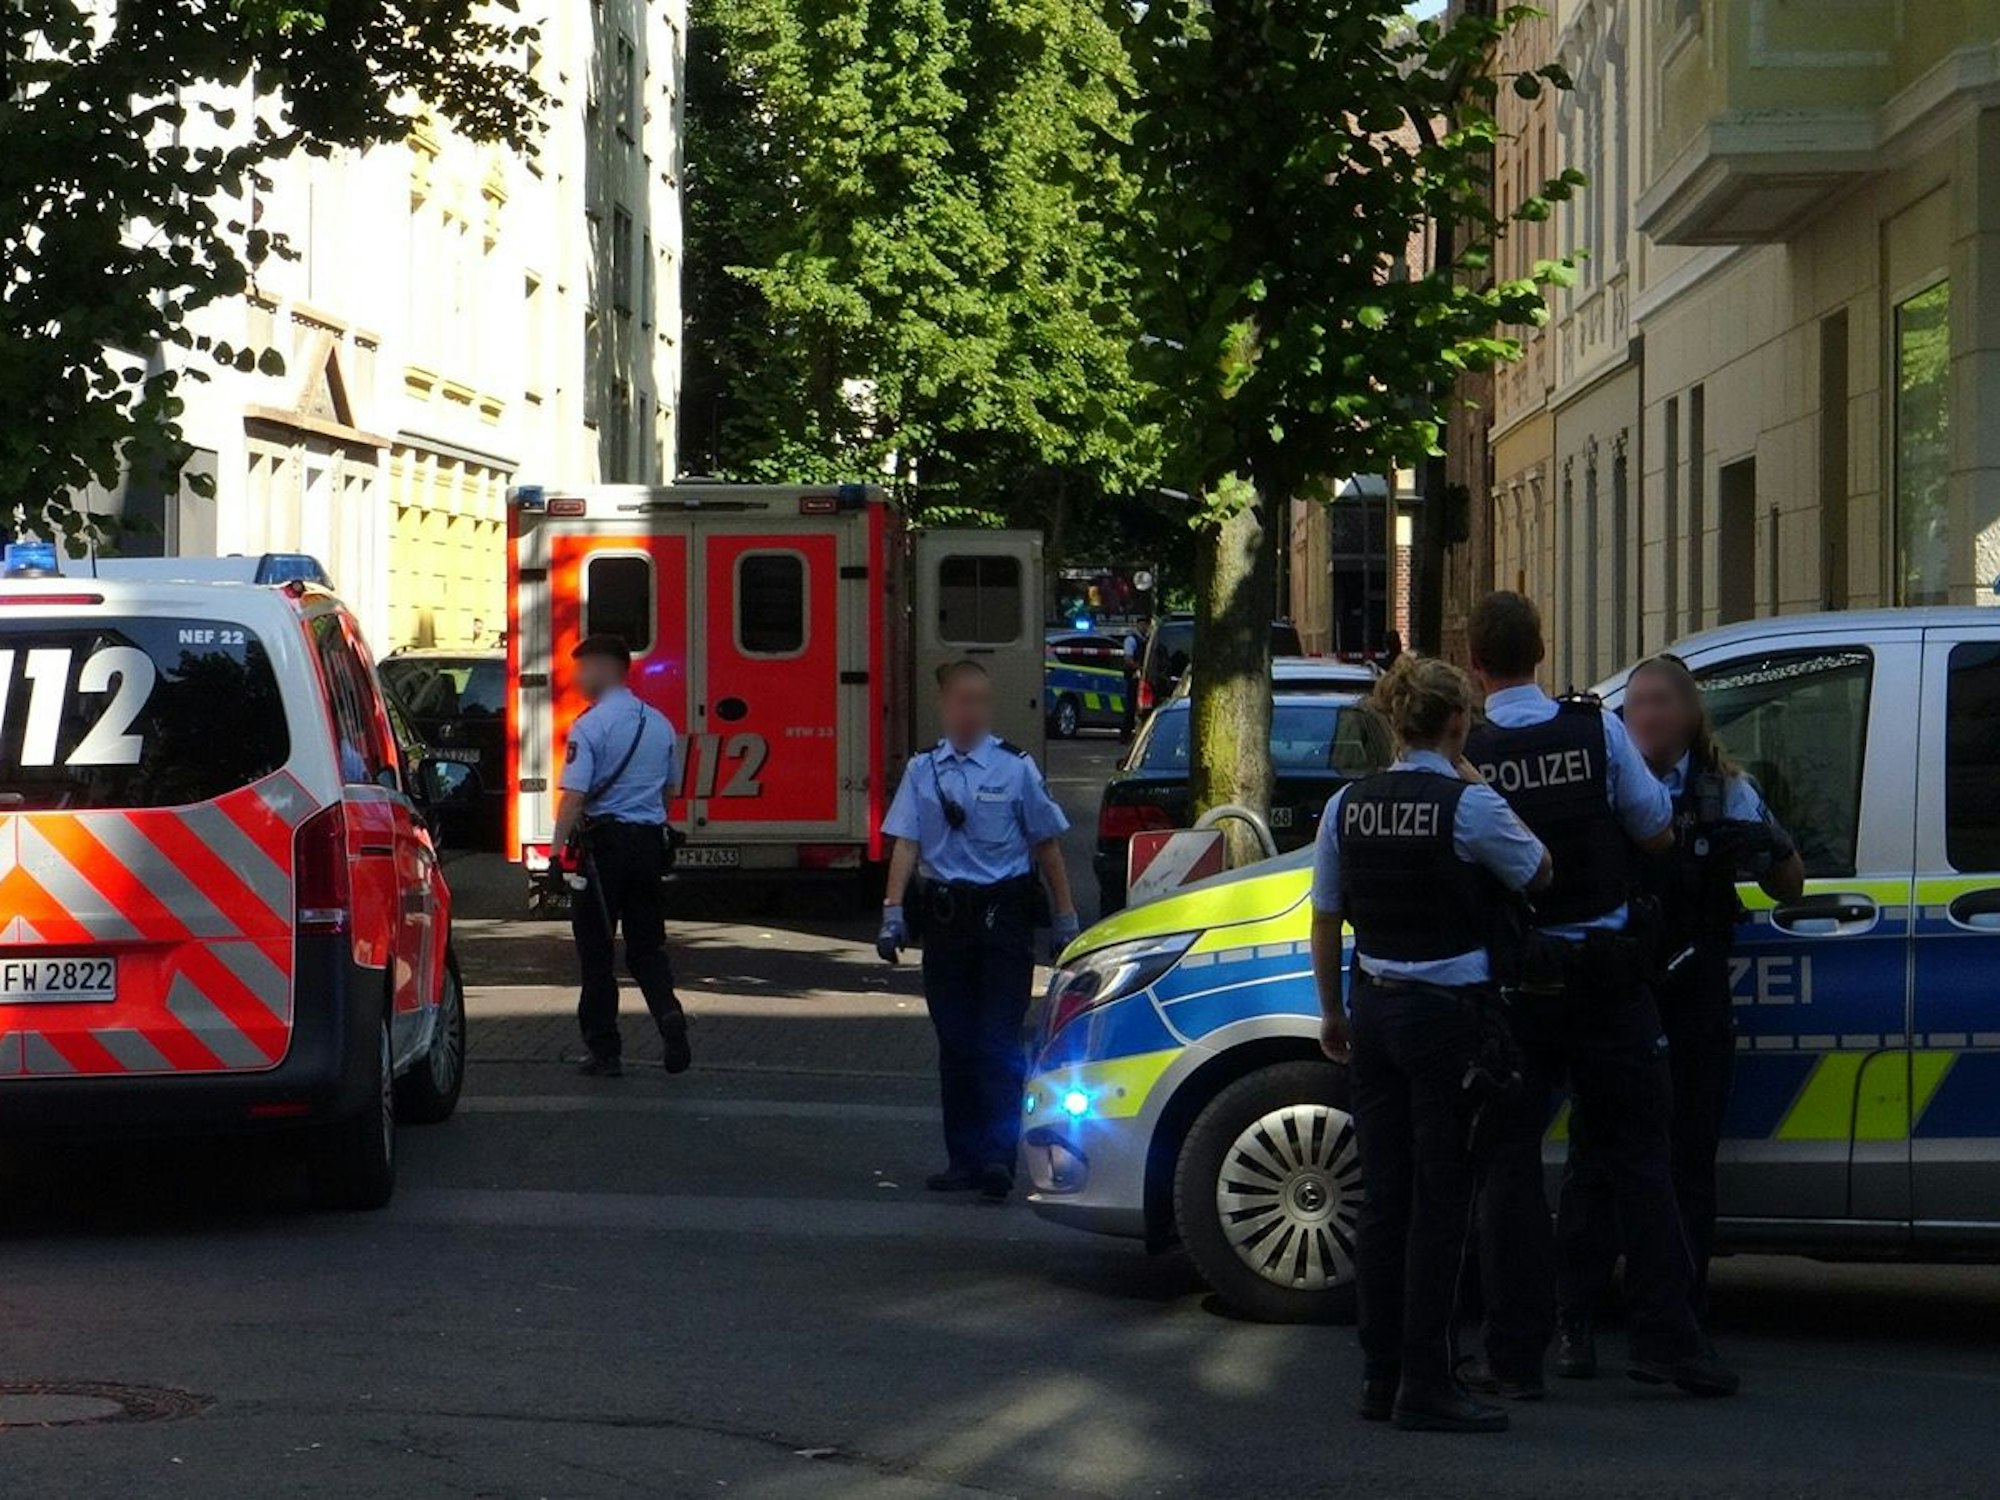 Einsatzfahrzeuge von Polizei und Rettungsdienst sowie mehrere Einsatzkräfte stehen in einer Straße.